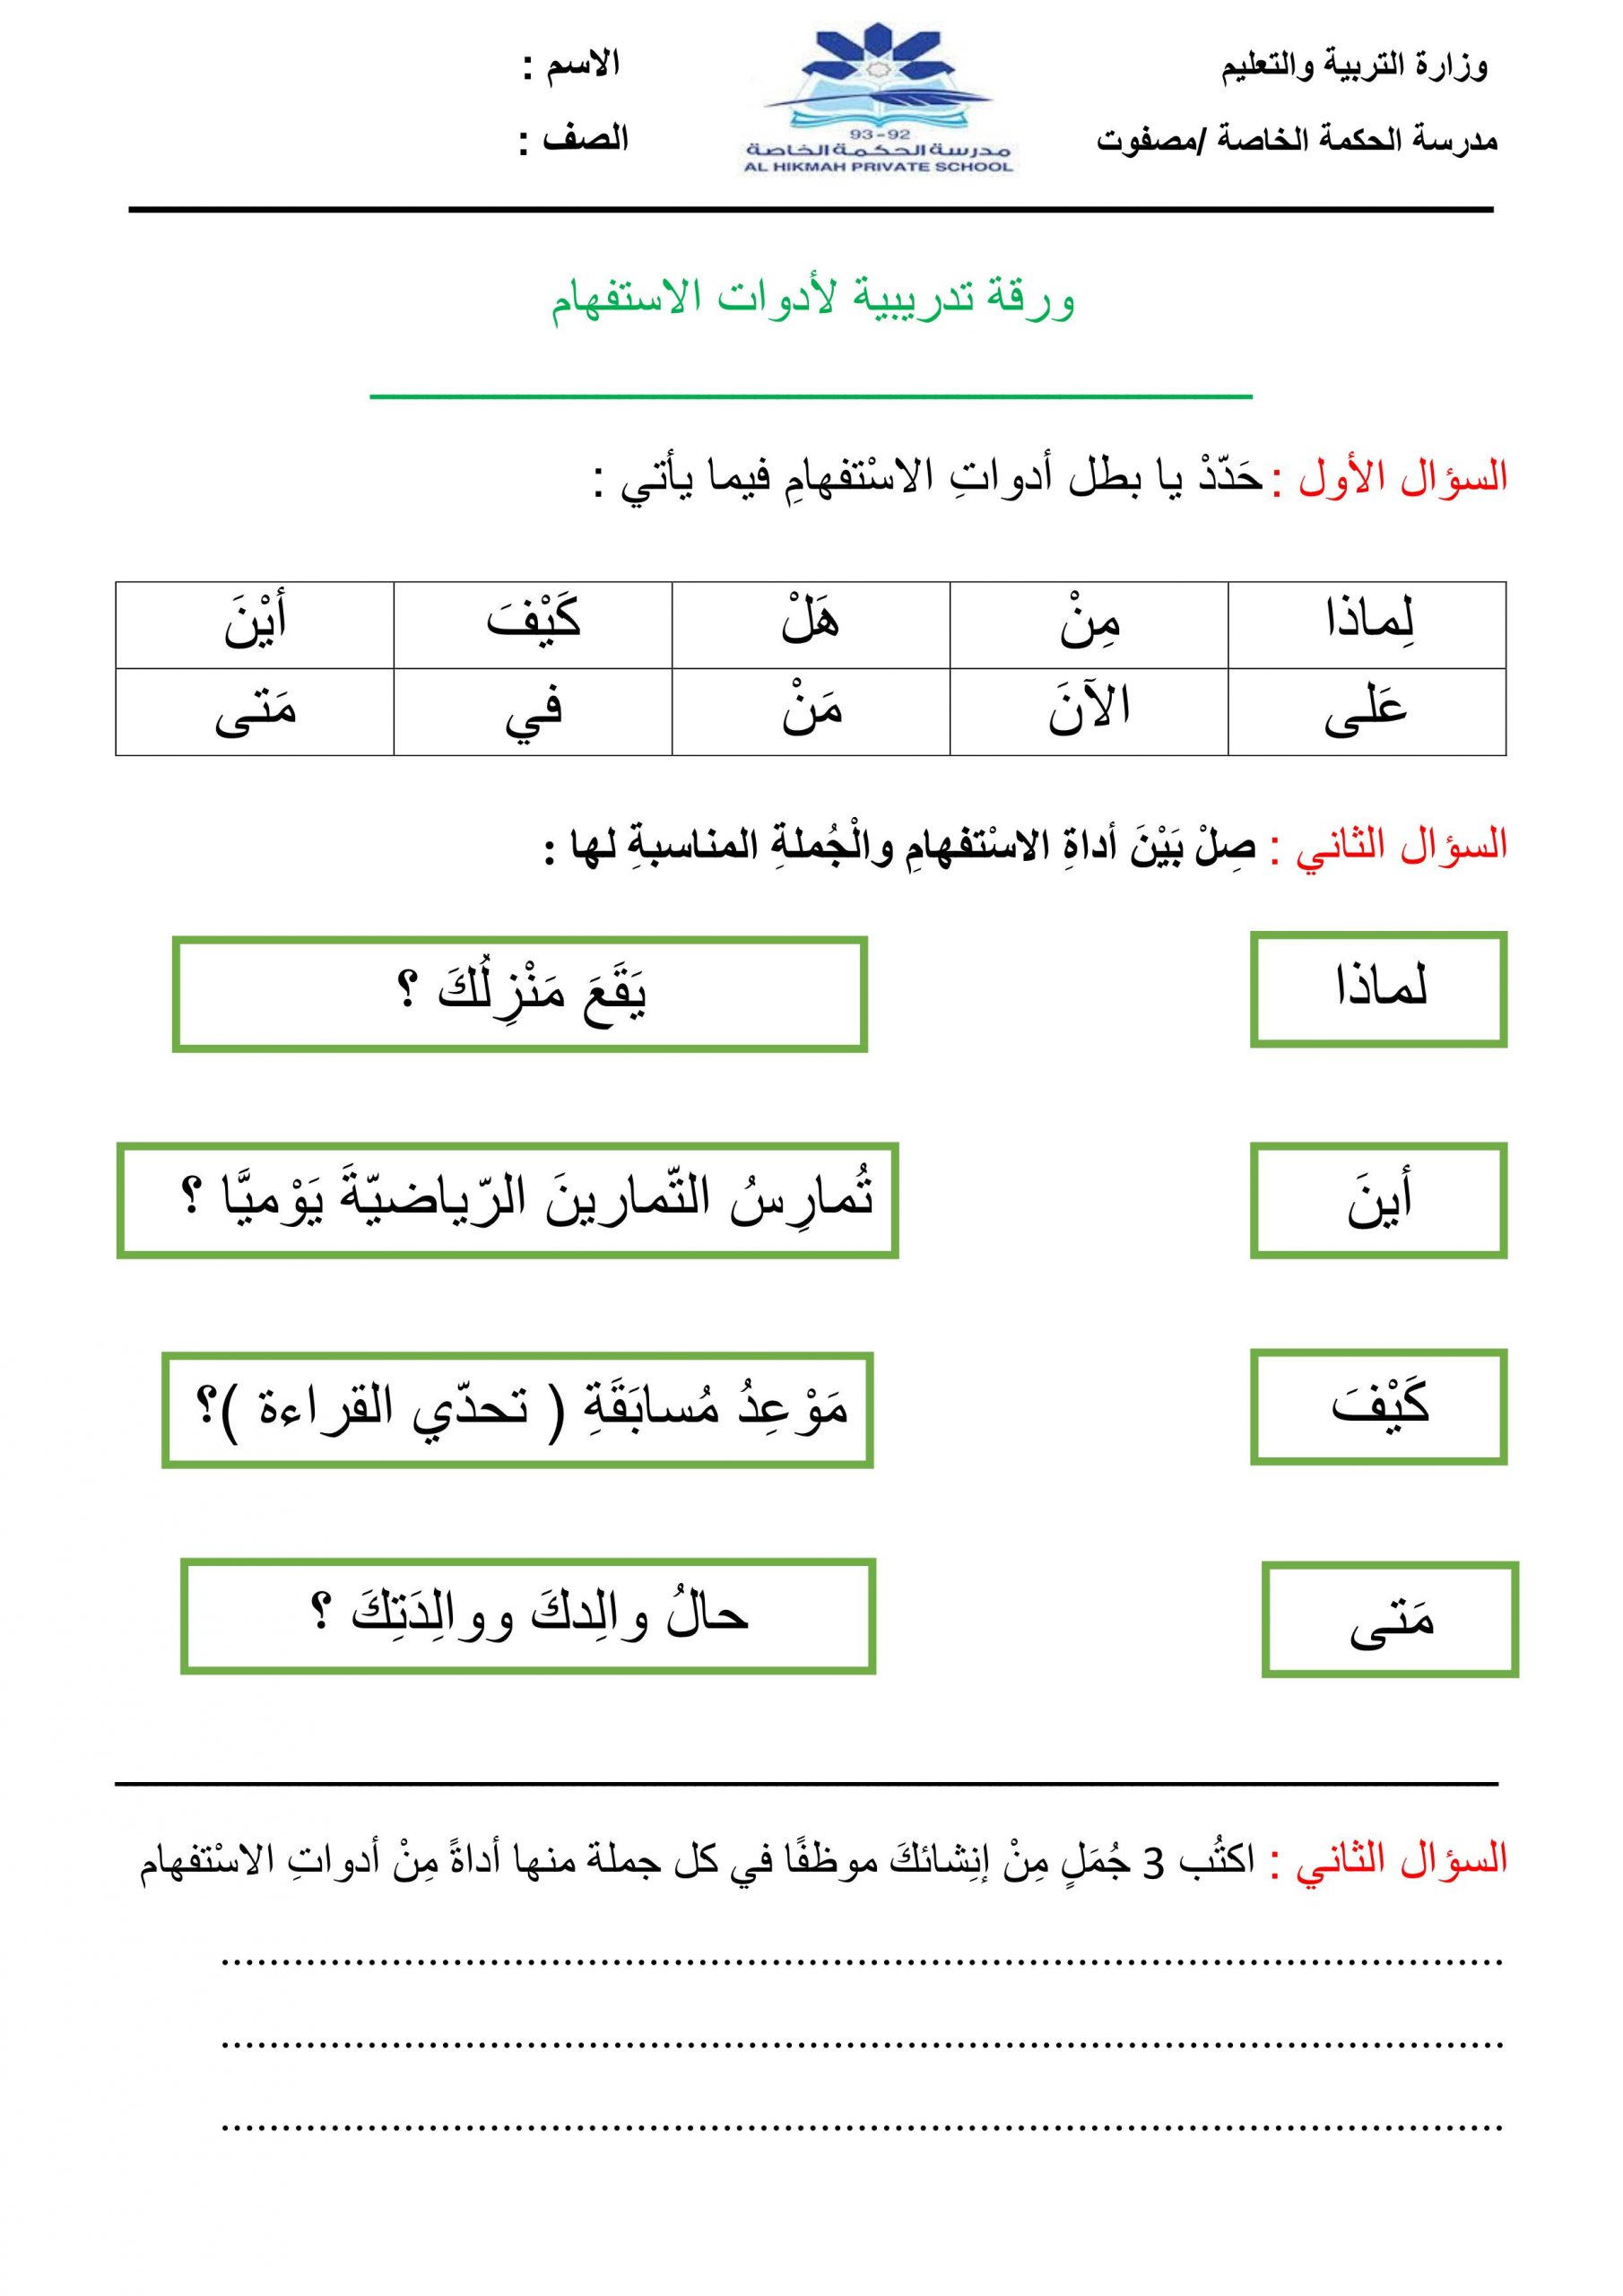 ورقة عمل تدريبية لأدوات الاستفهام الصف الثاني مادة اللغة العربية 